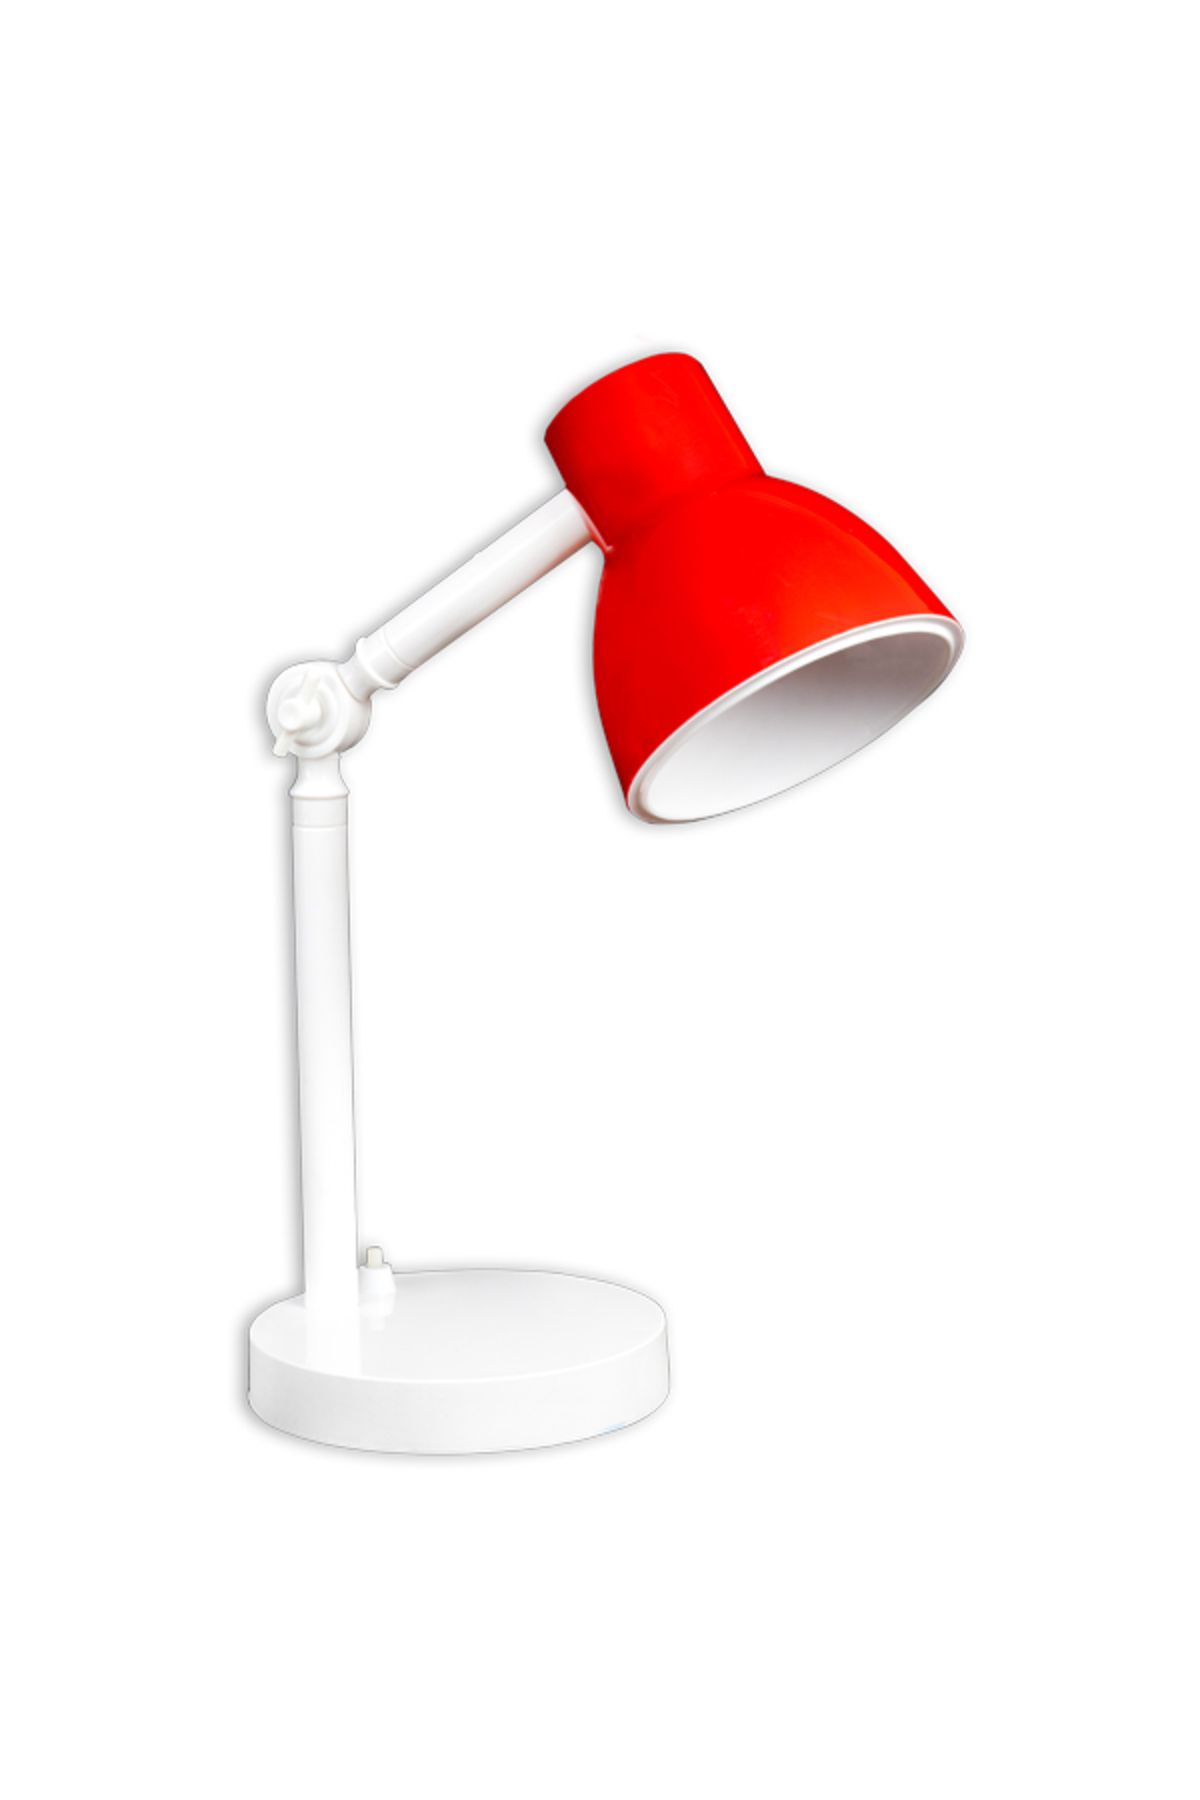 Baysal Çalışma Okuma Masa Üstü Gece Lambası Kırmızı Rengi Desk Lamp